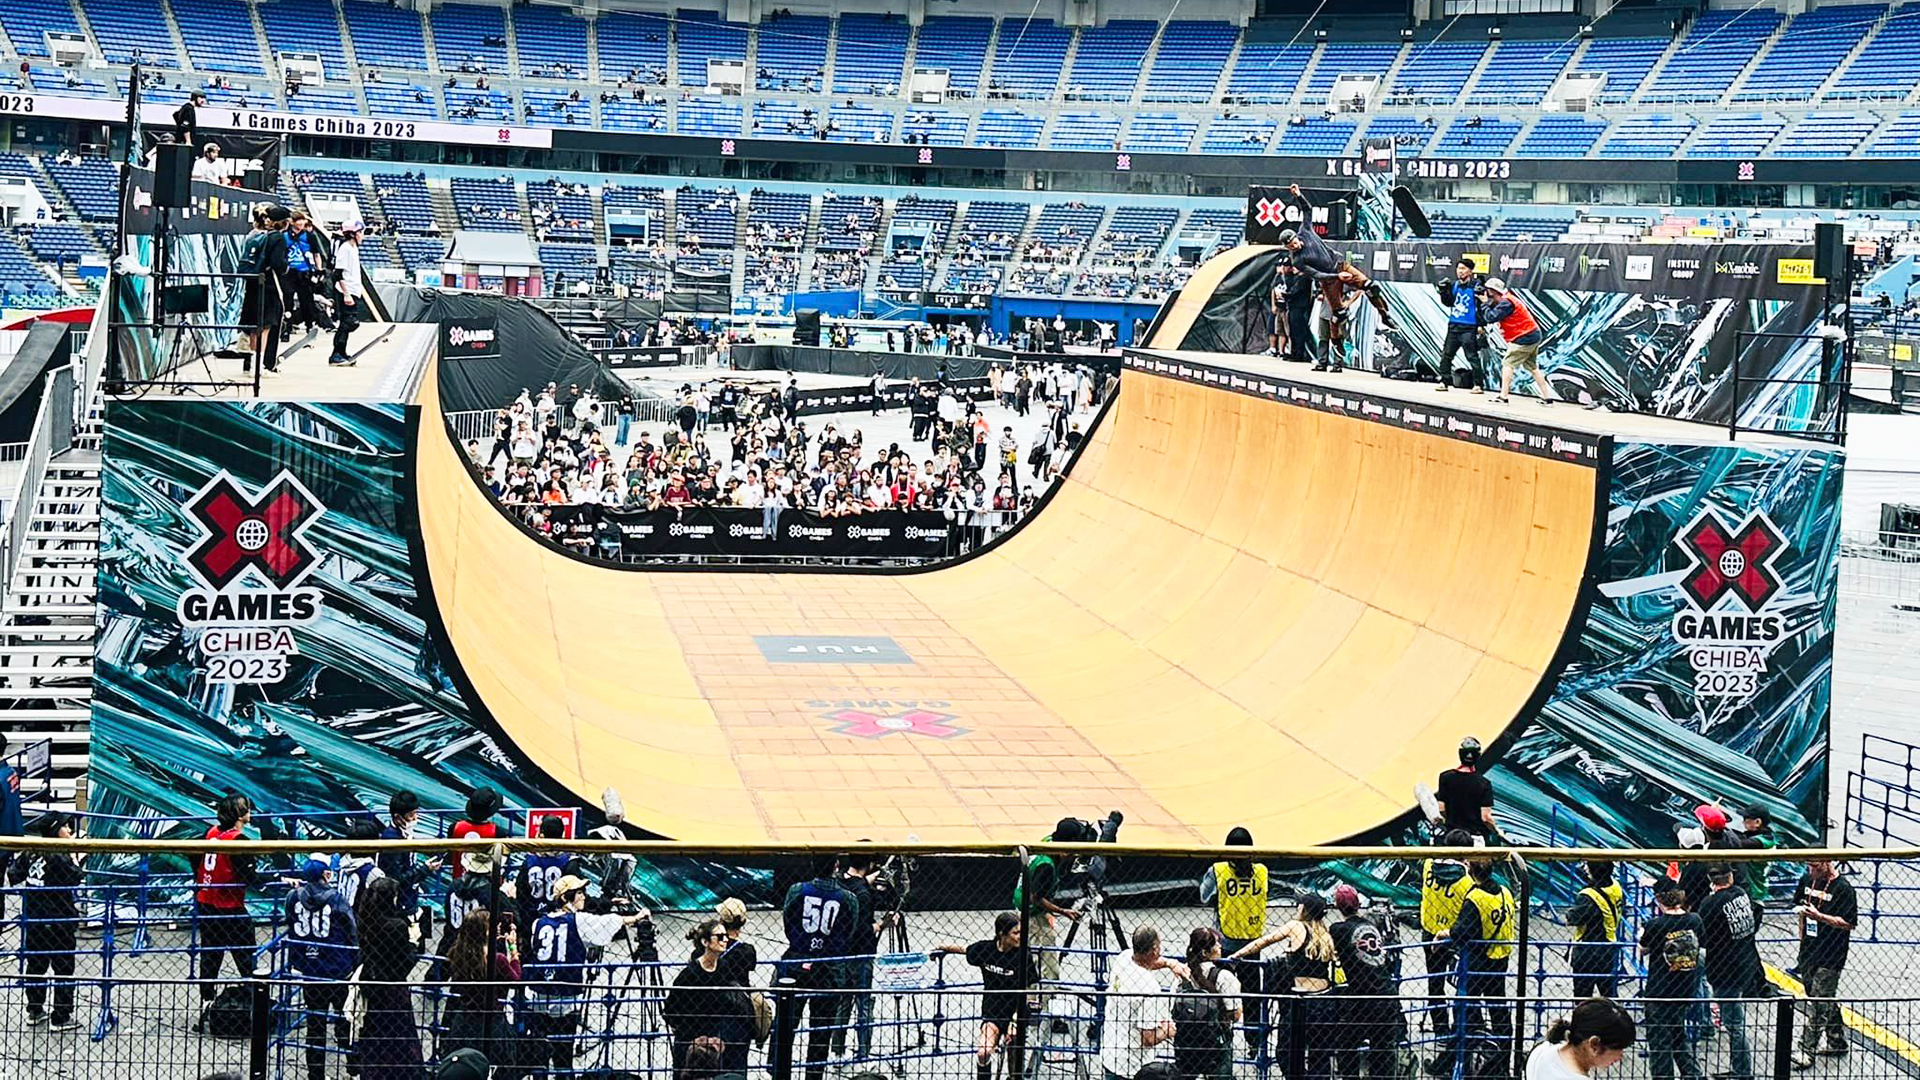 スケートボード・BMX・Moto Xの祭典 X Games Chiba 2023